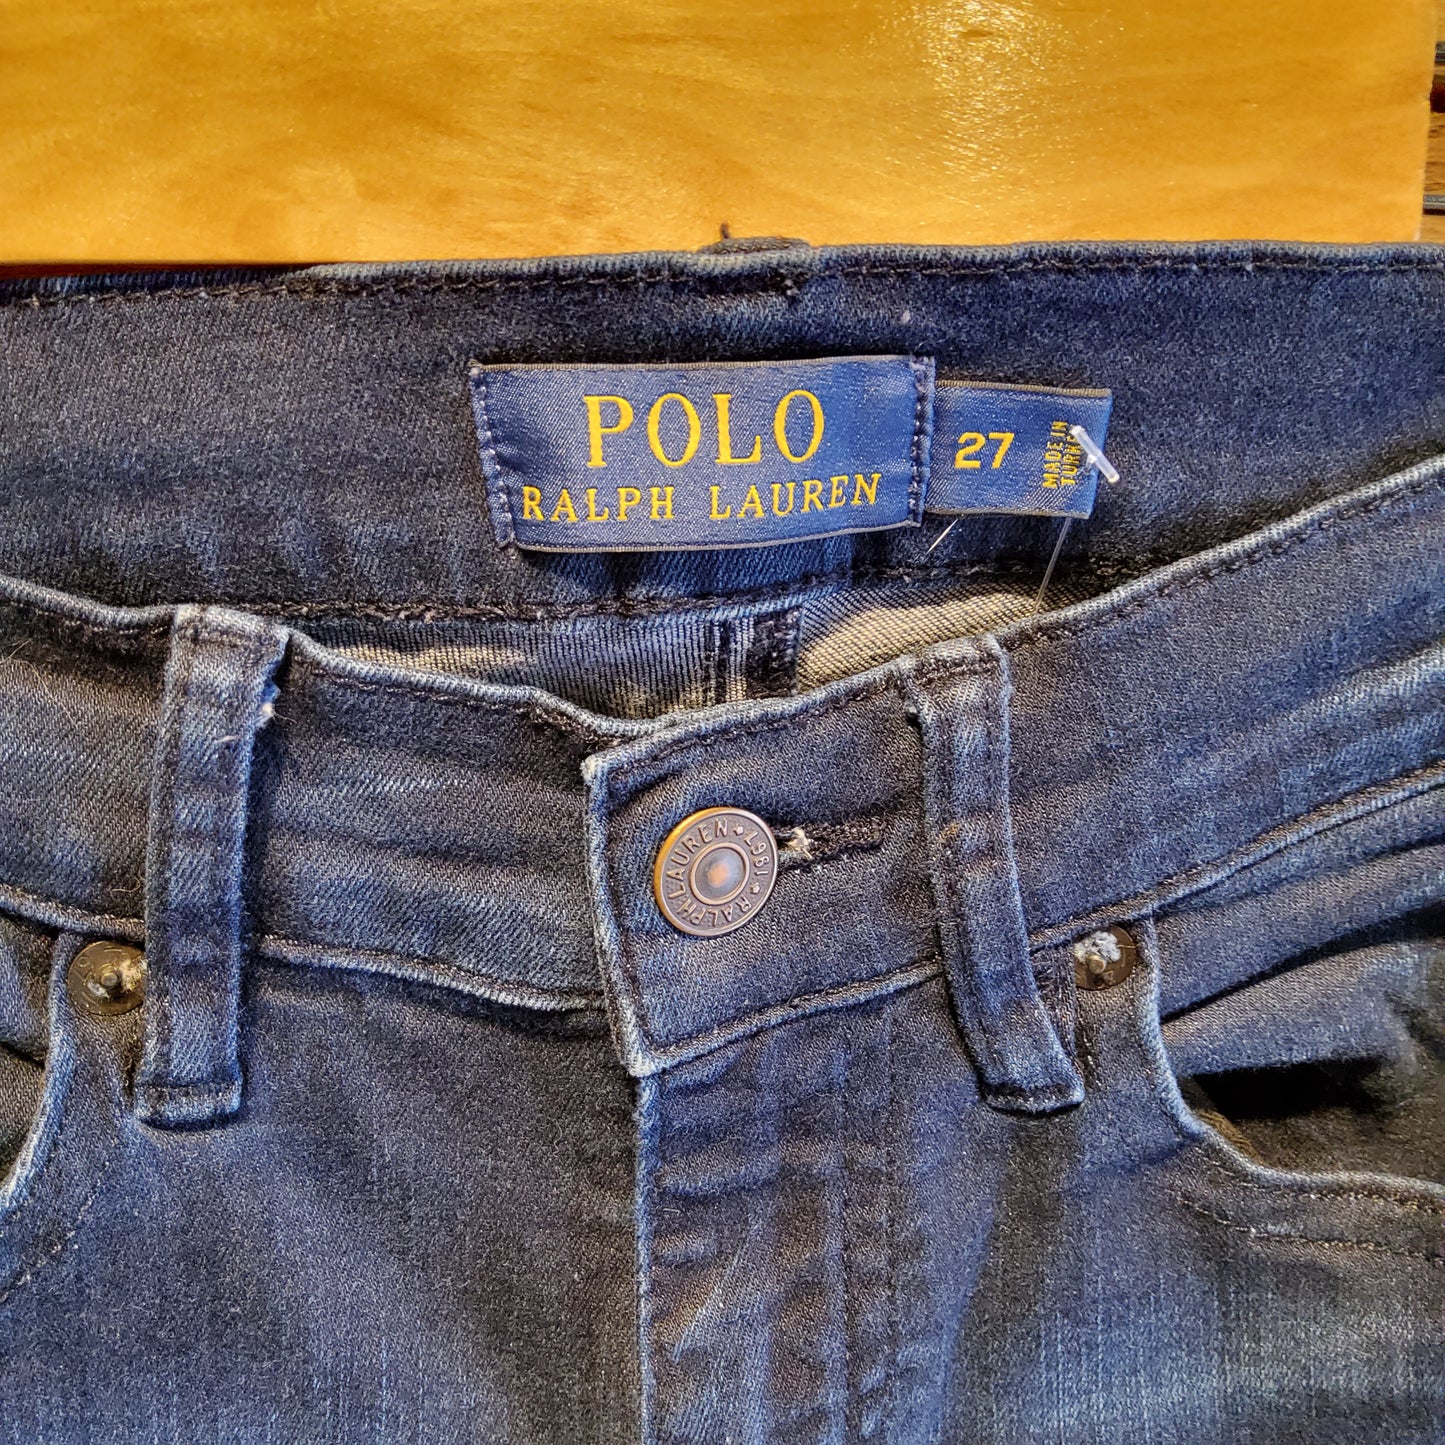 Polo Skinny Jeans Sz 27